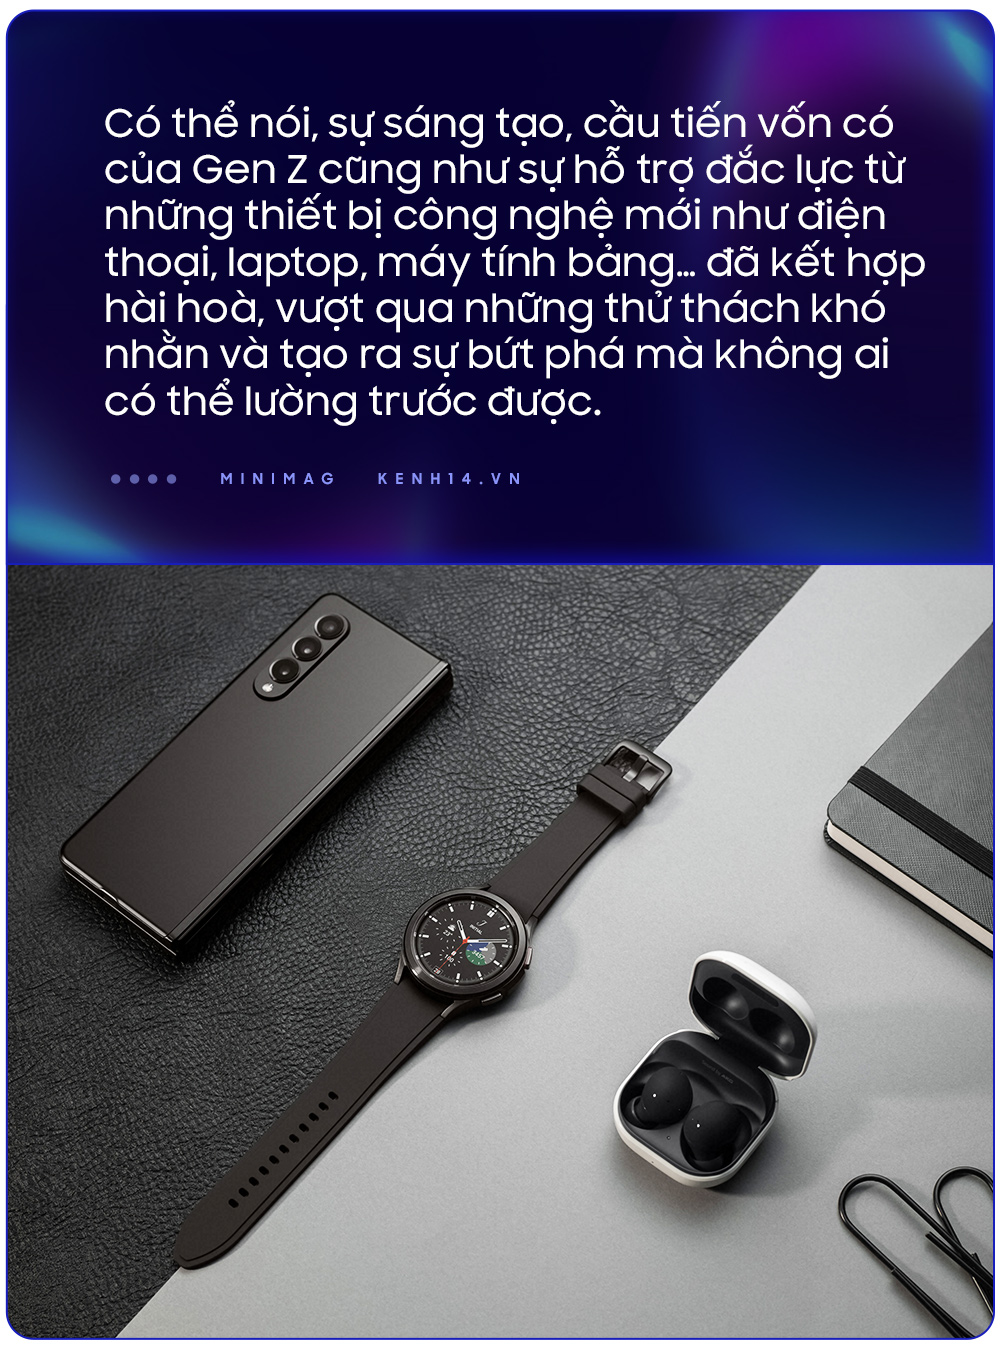 Hành trình đầy cảm hứng của Samsung khi đồng hành cùng Gen Z Việt “mở chuyện chưa kể” - Ảnh 6.